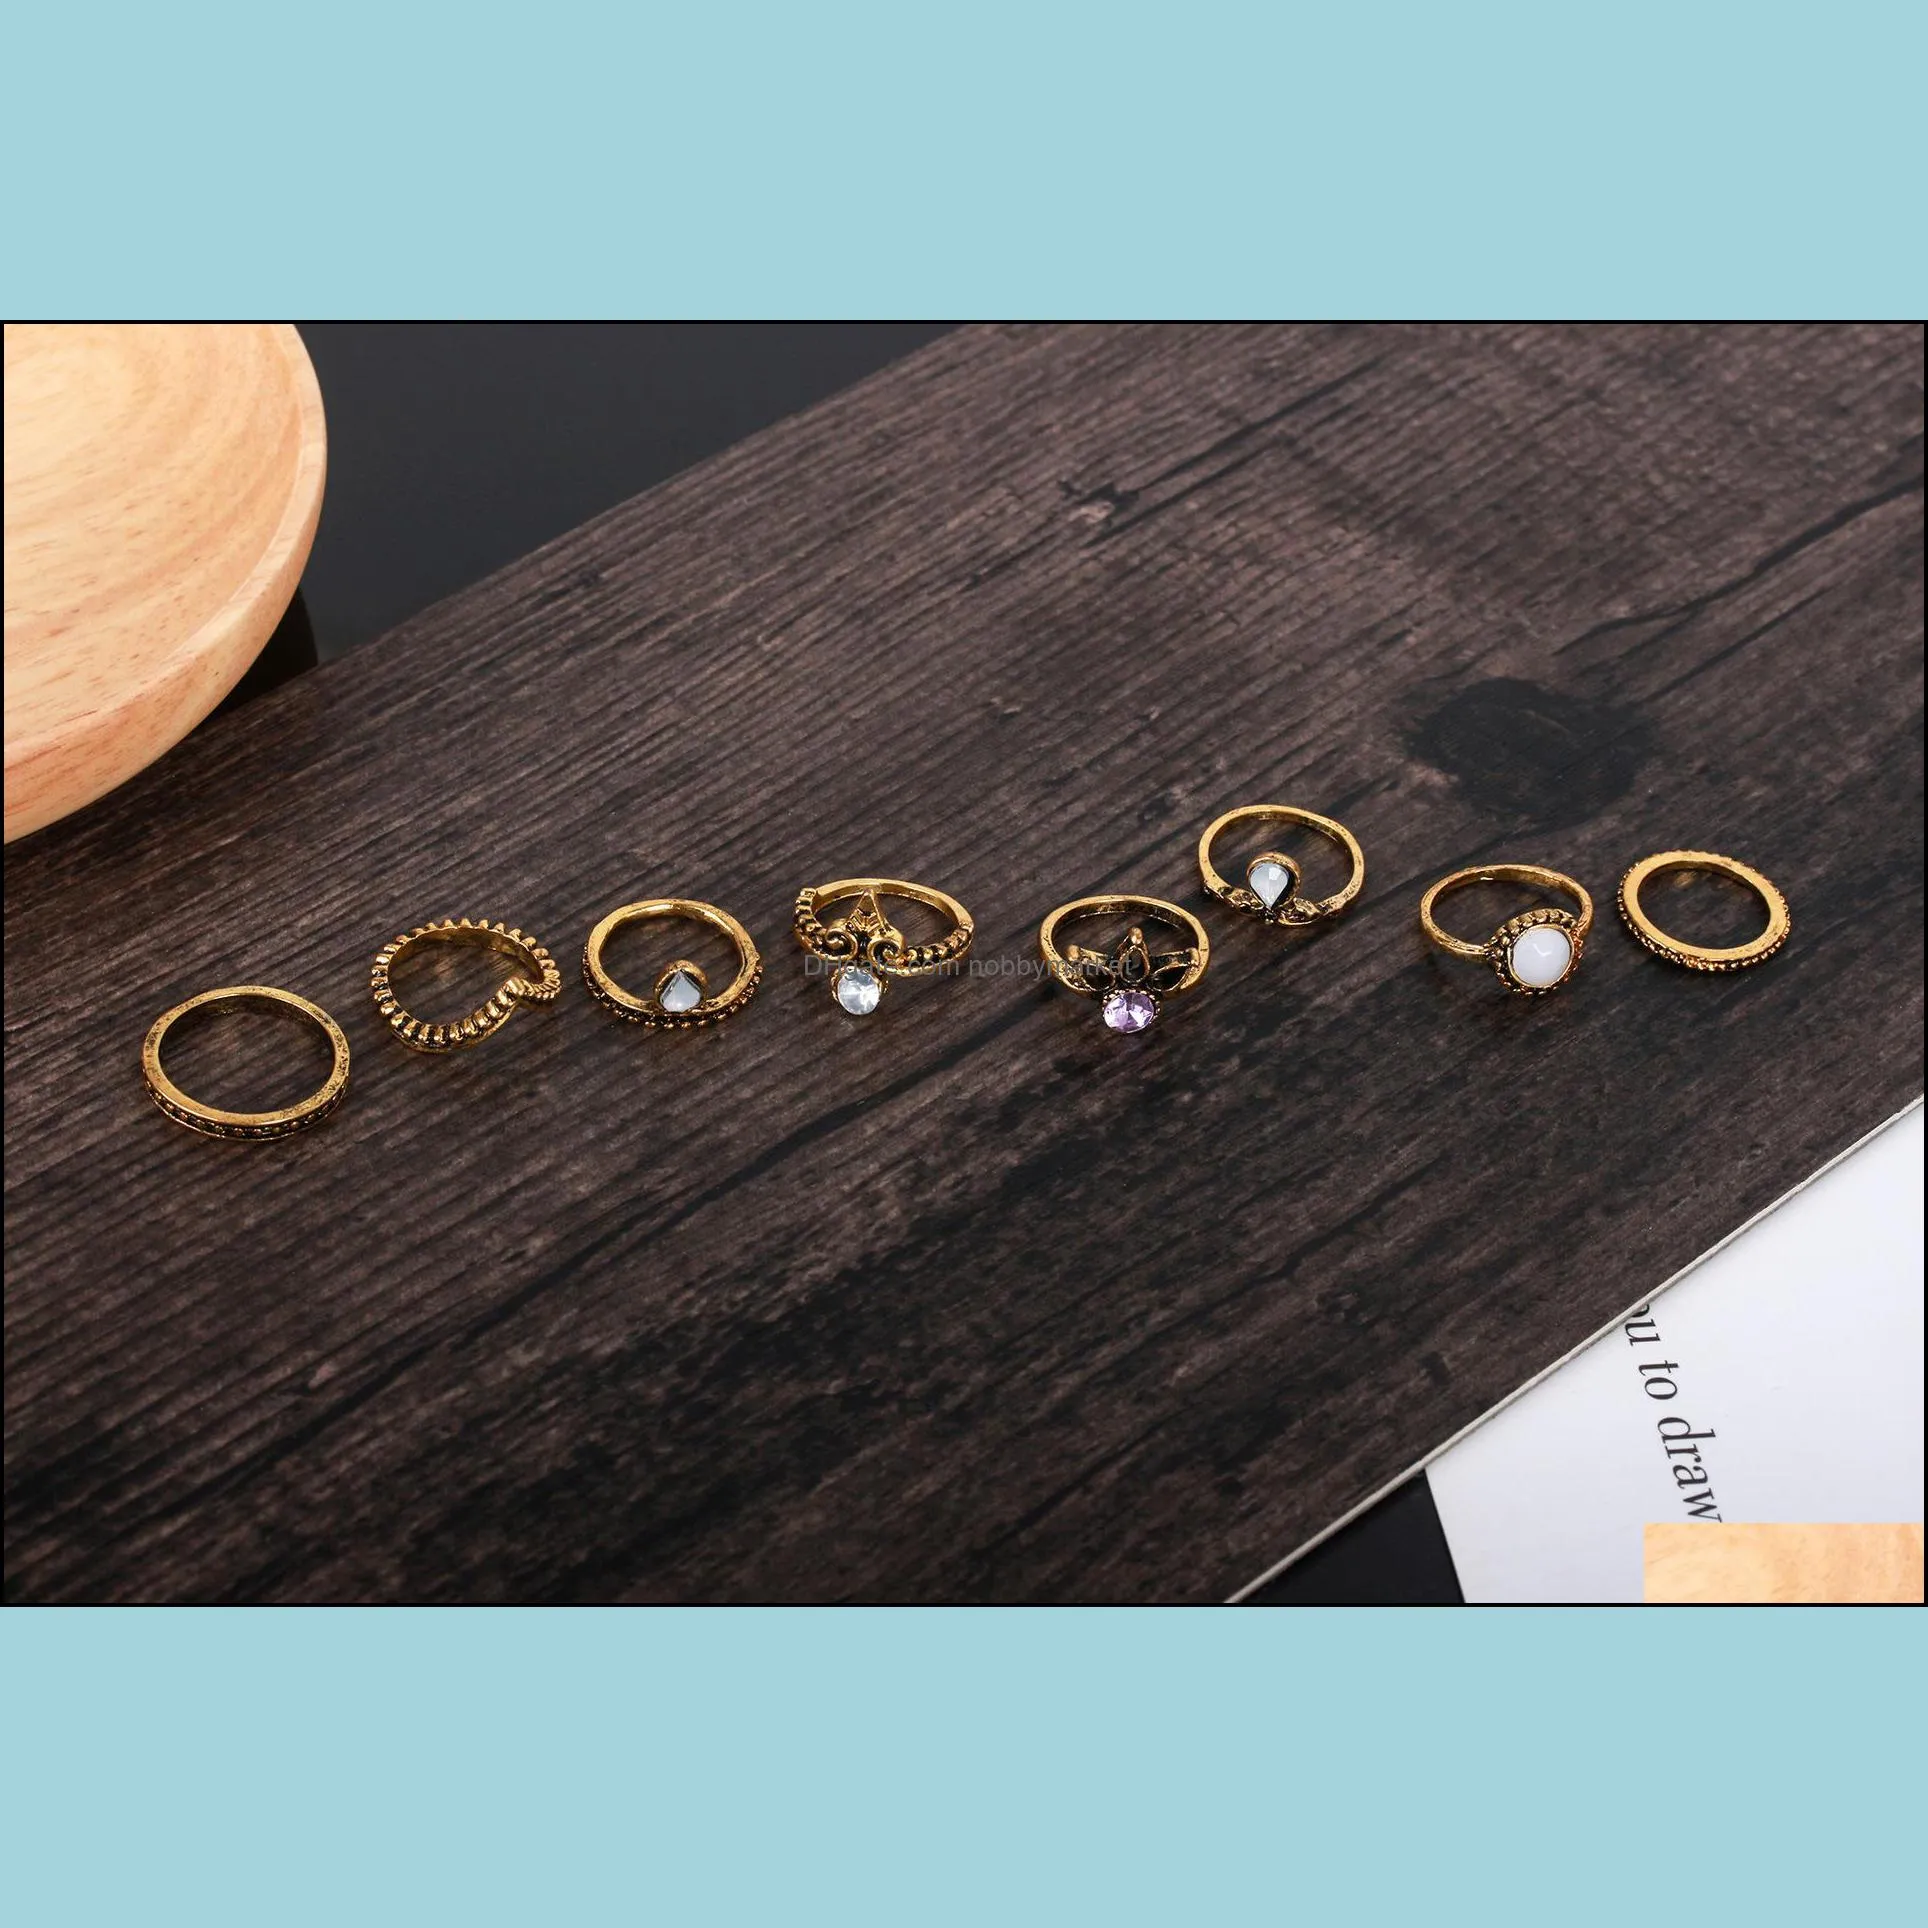 8pcs/set Vintage Midi Rings Crown White gem Bronze brass Knuckle Ring Ethnic Carved Boho Midi Finger Rings For men&women Fashion